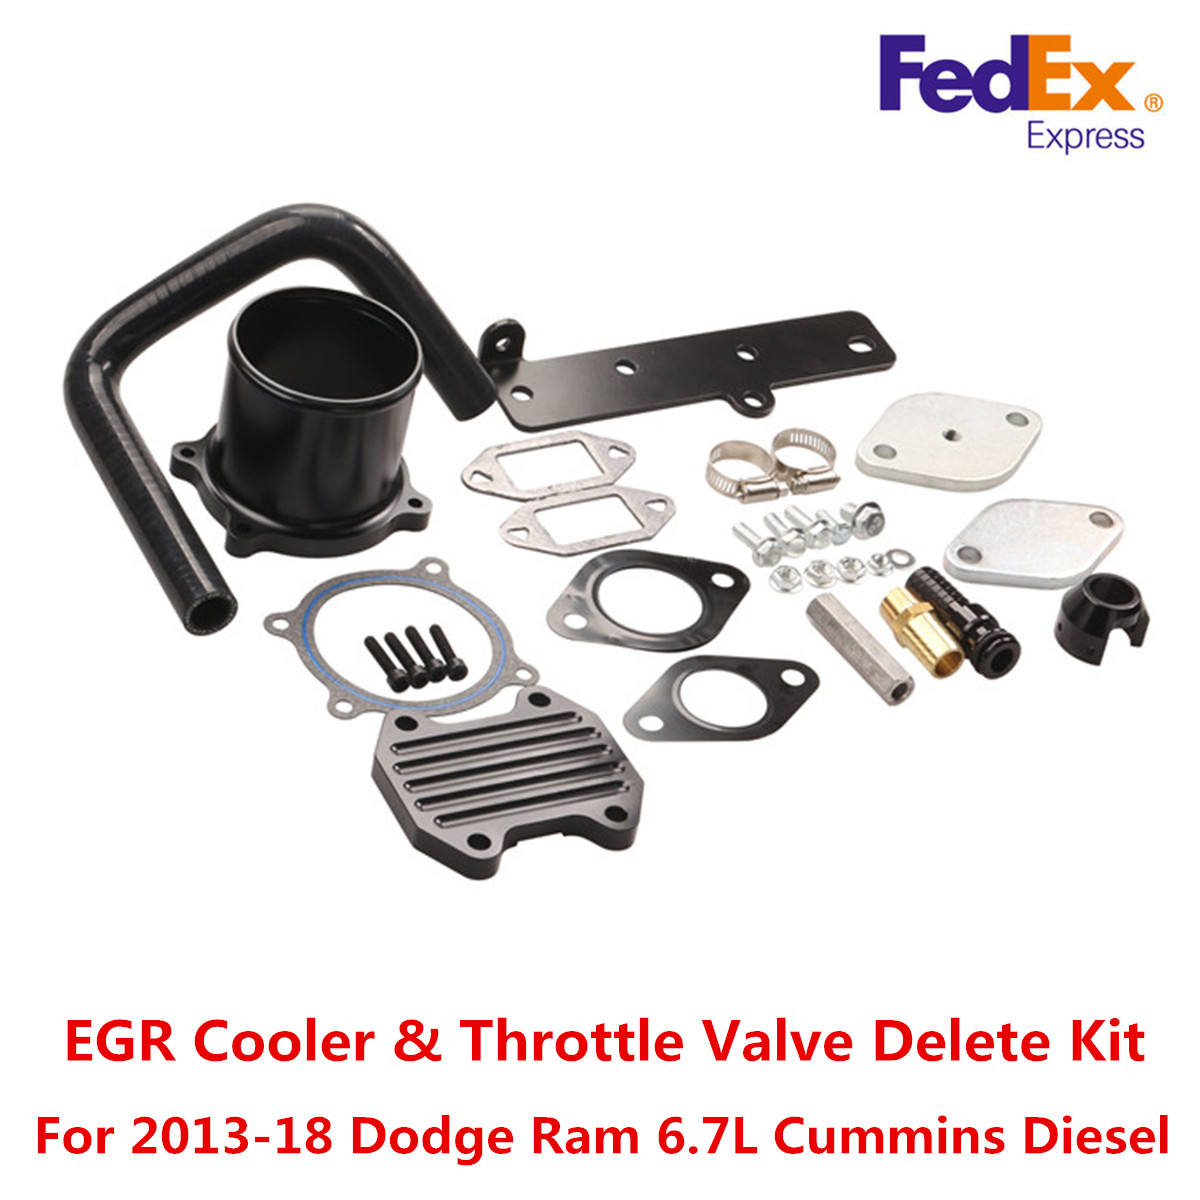 EGR Cooler & Throttle Valve Delete Kit For 2013-18 Dodge Ram 6.7L Cummi...